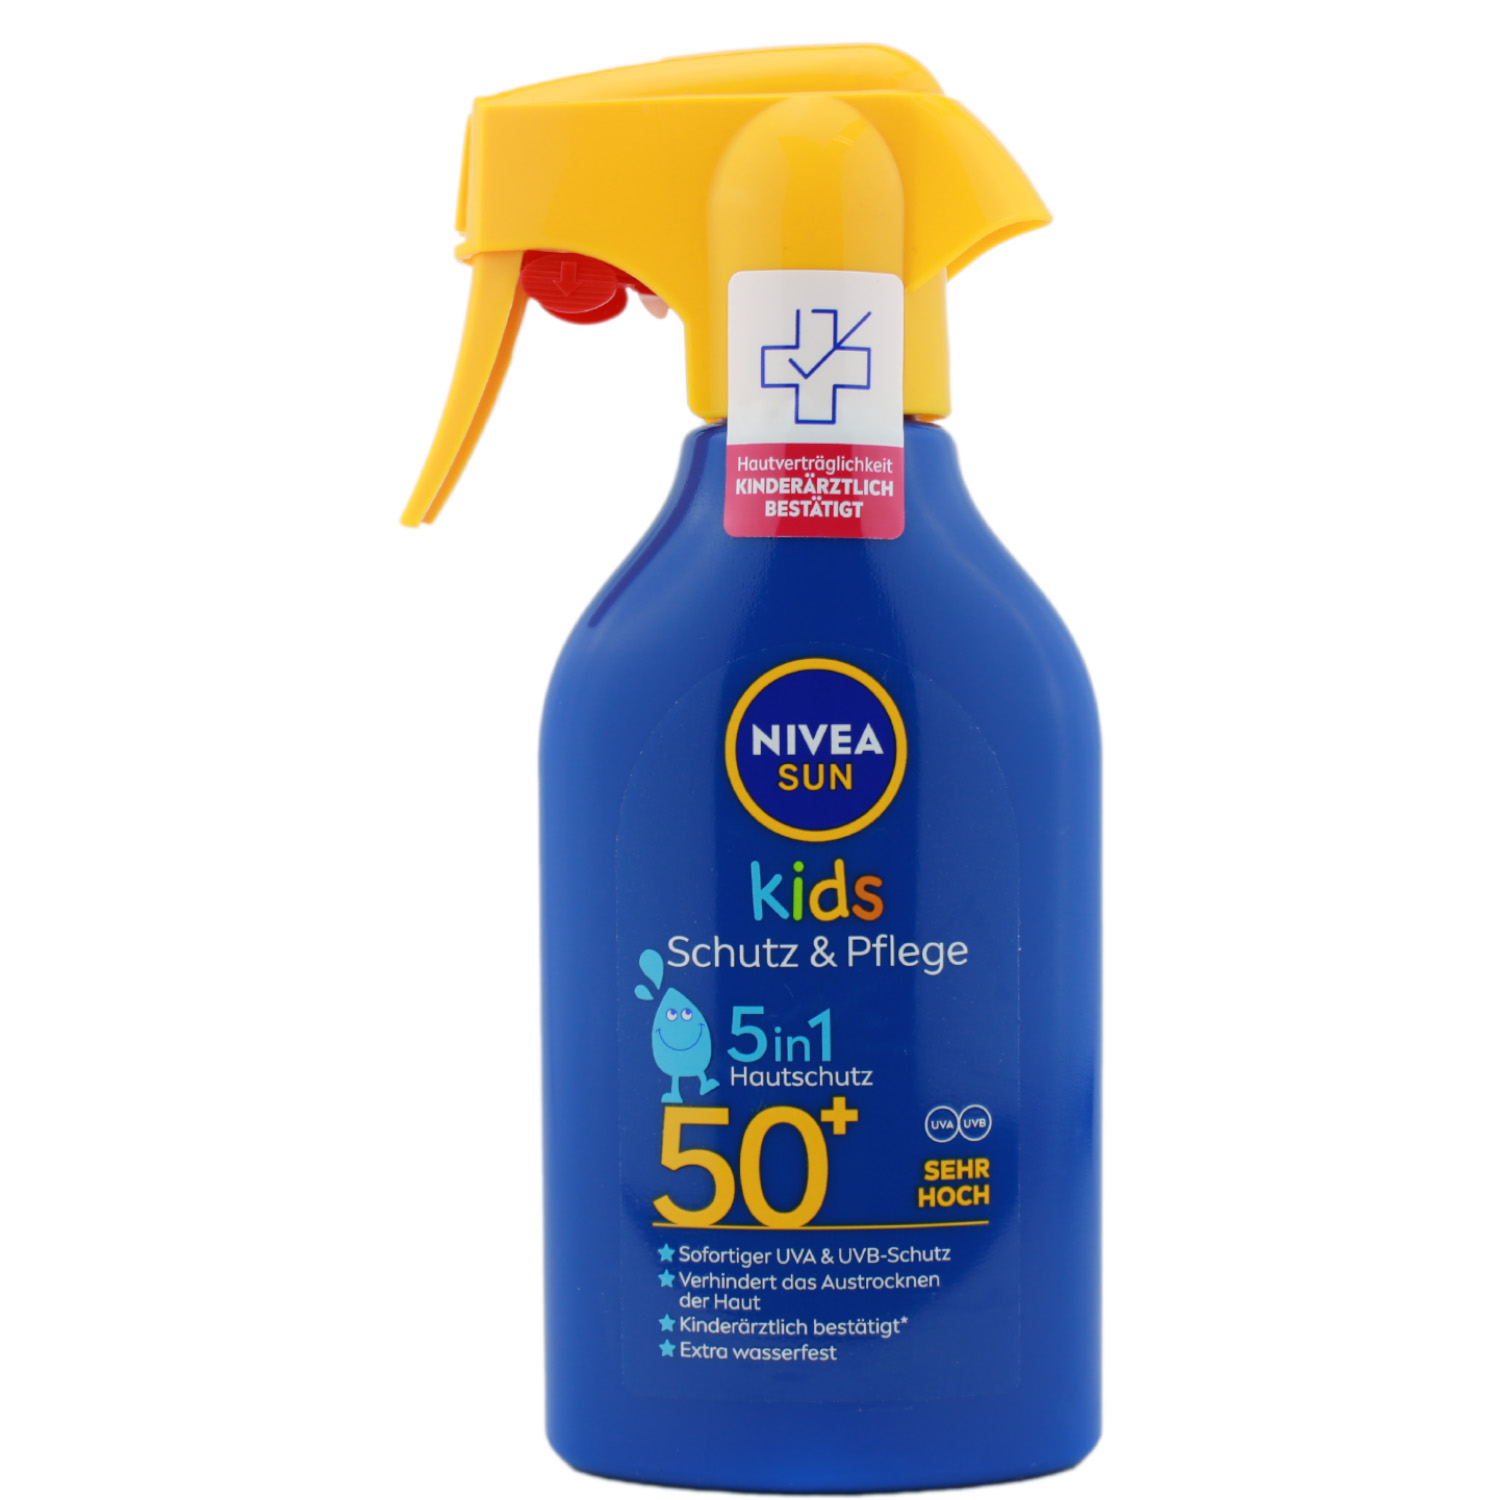 Nivea Sun Kids Schutz & Pflege 5in1 Trigger Sonnenspray mit LSF50+ 250ml